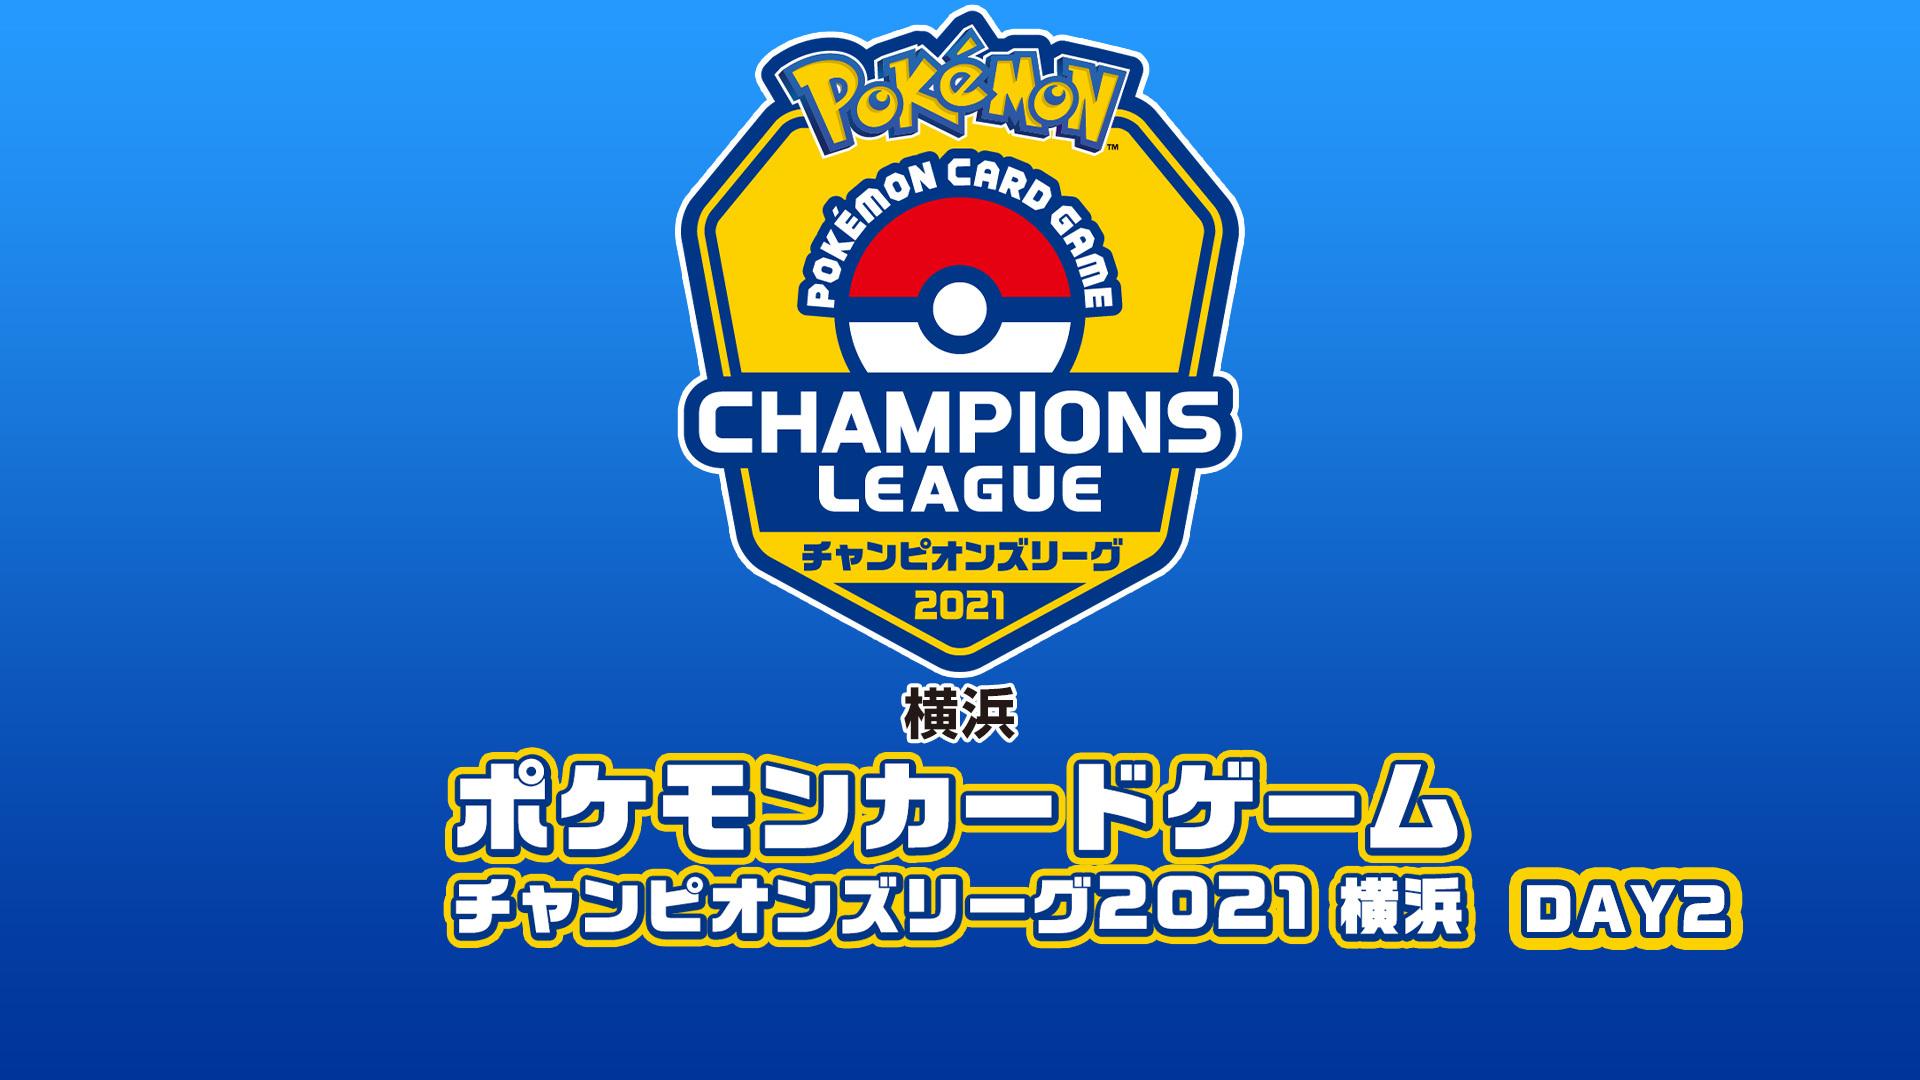 ポケモンカードゲーム チャンピオンズリーグ21横浜 Day2 10 04 日 10 30開始 ニコニコ生放送